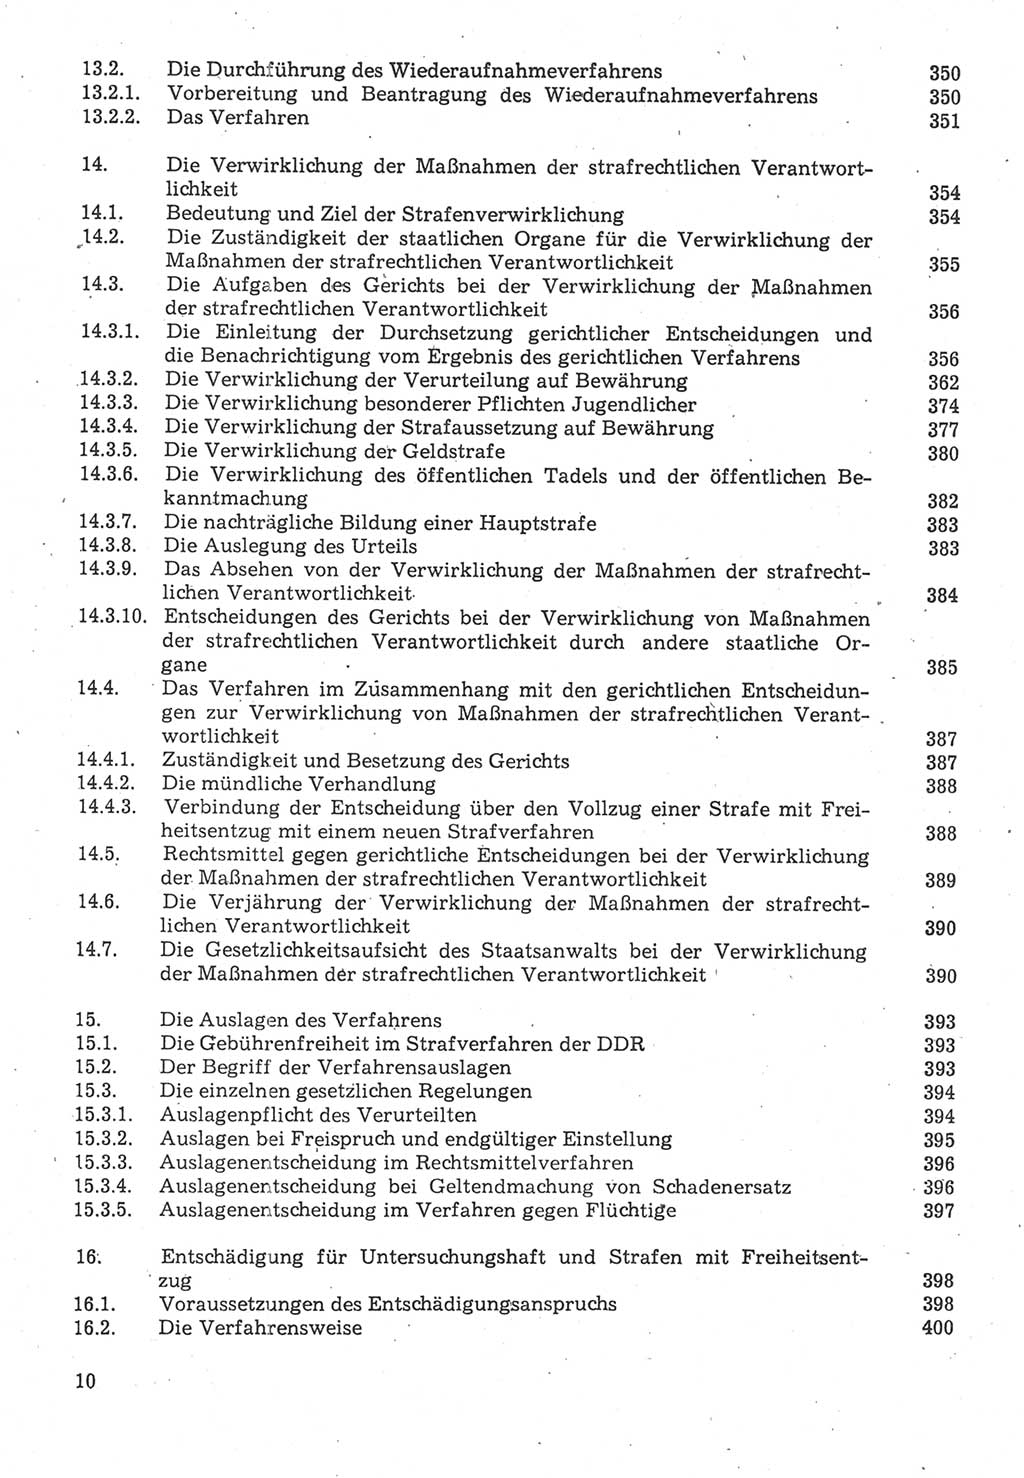 Strafverfahrensrecht [Deutsche Demokratische Republik (DDR)], Lehrbuch 1987, Seite 10 (Strafverf.-R. DDR Lb. 1987, S. 10)